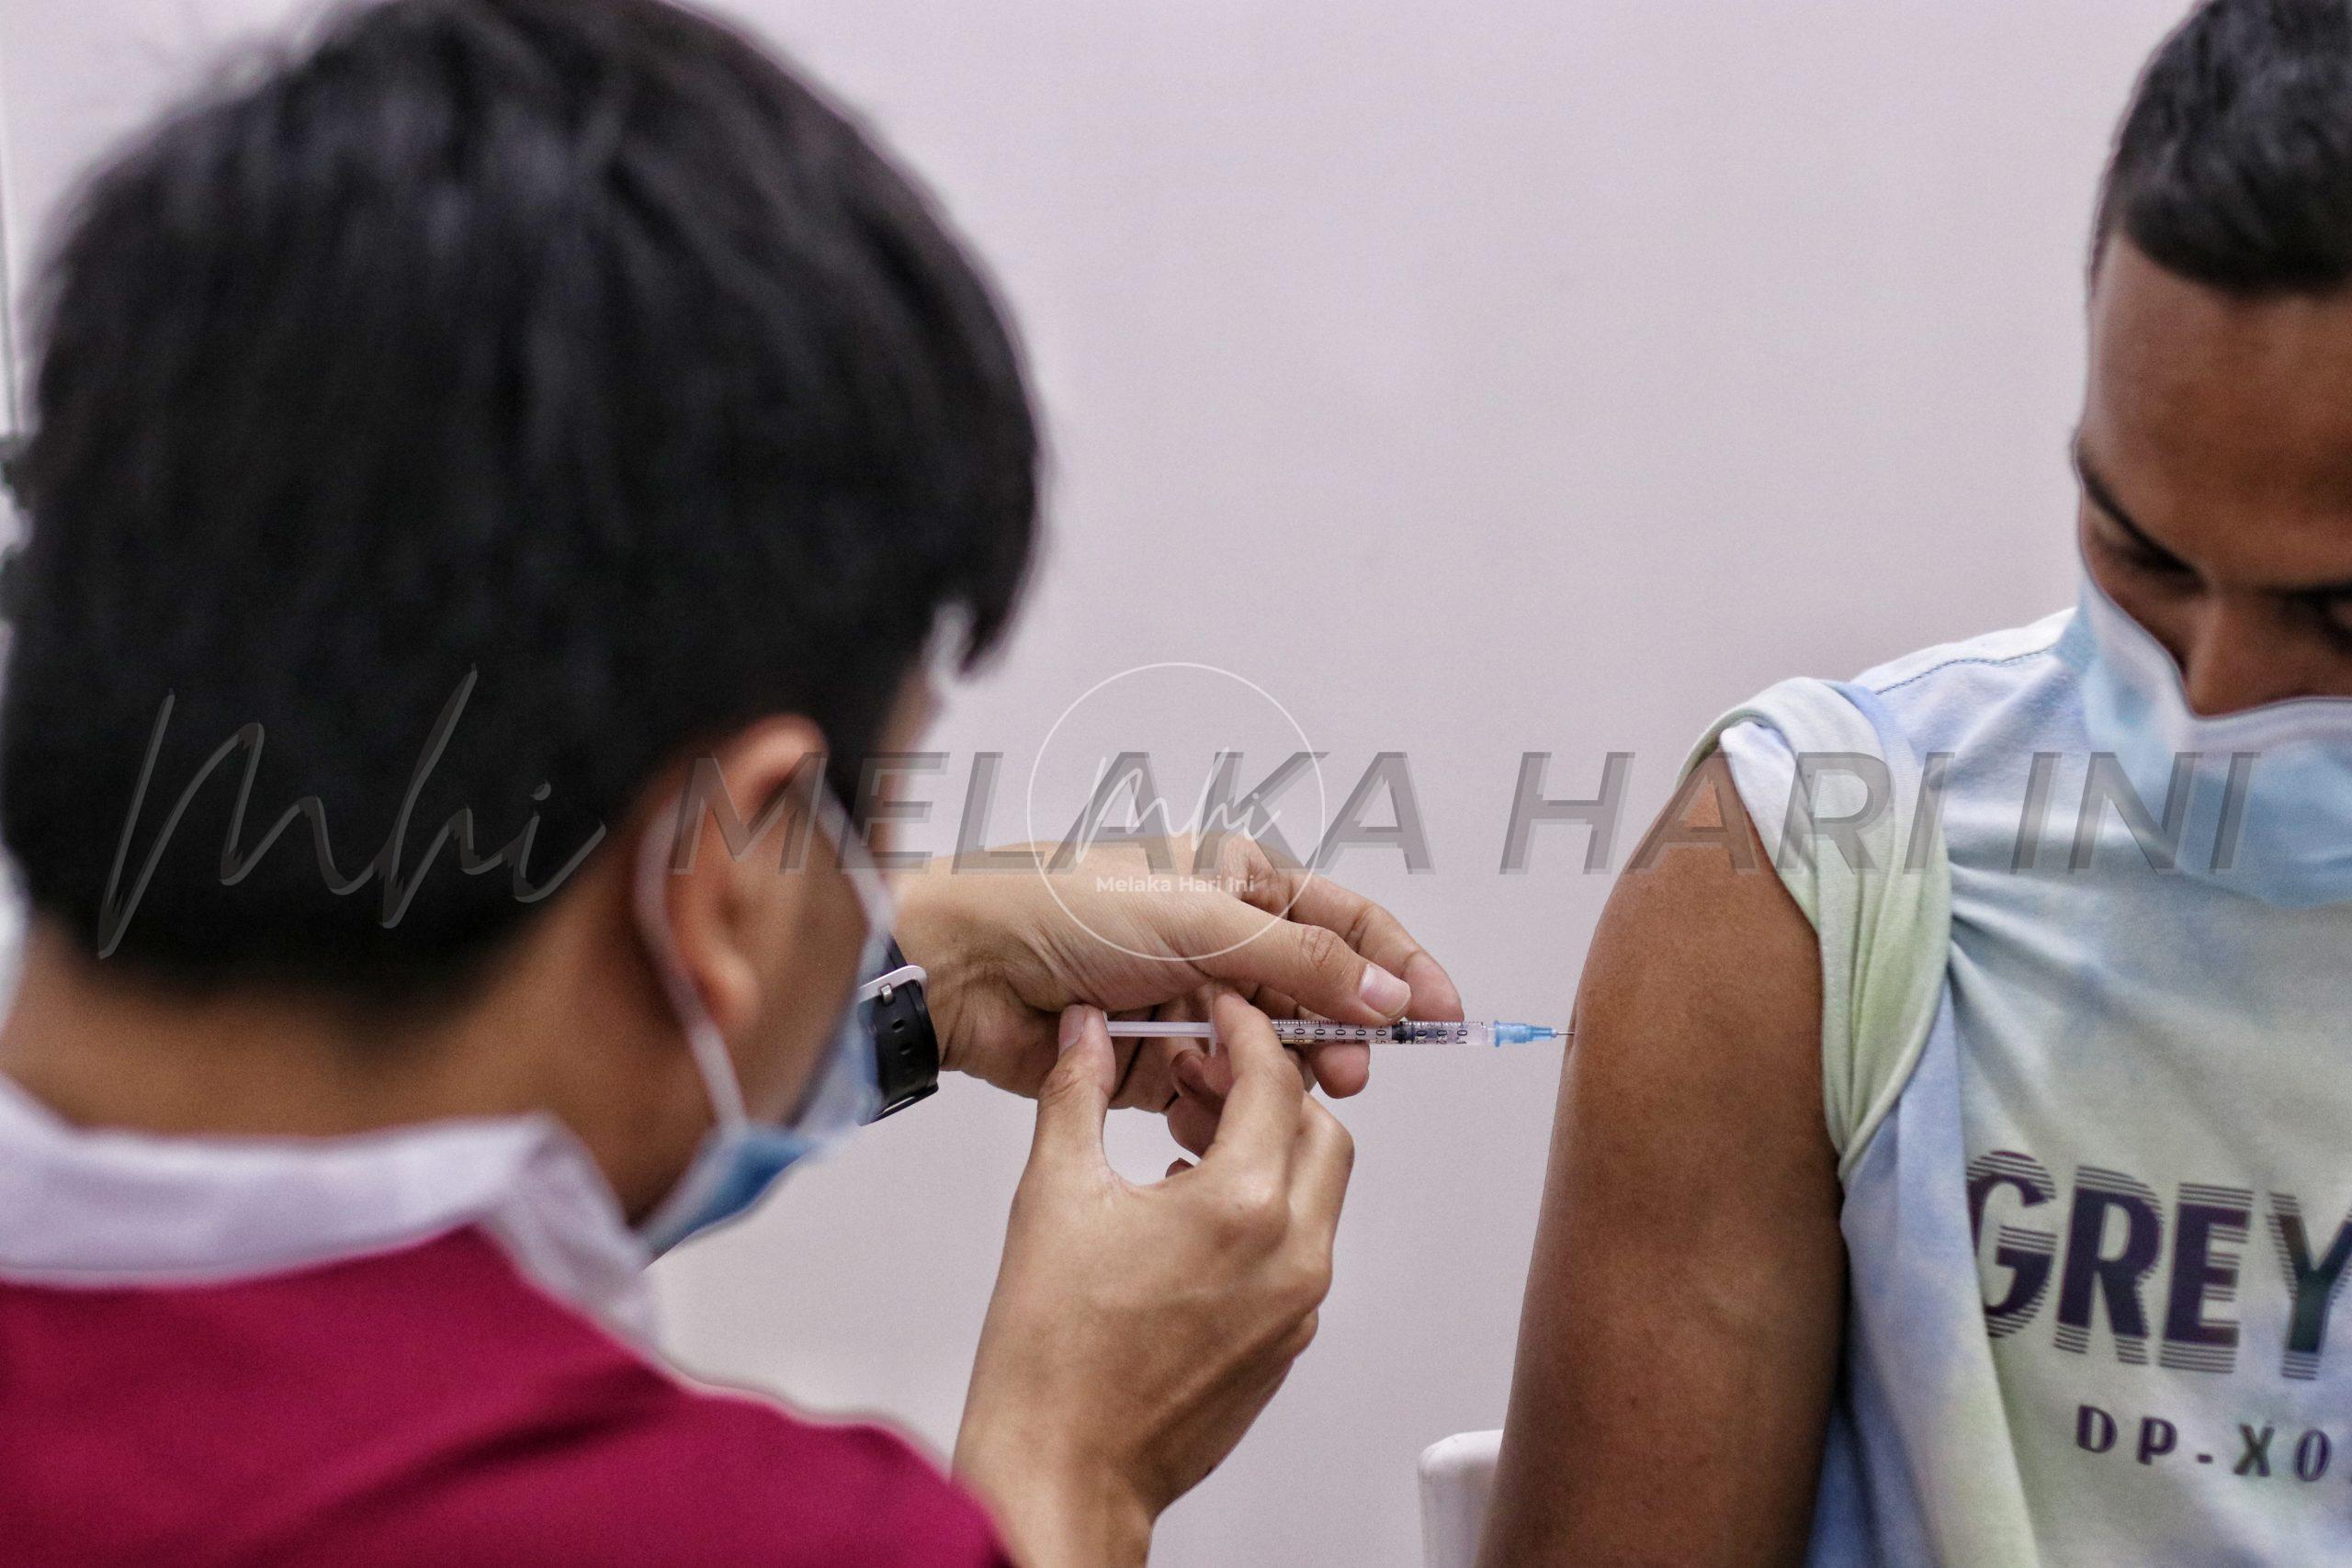 Pusat Pemberian Vaksin Melaka